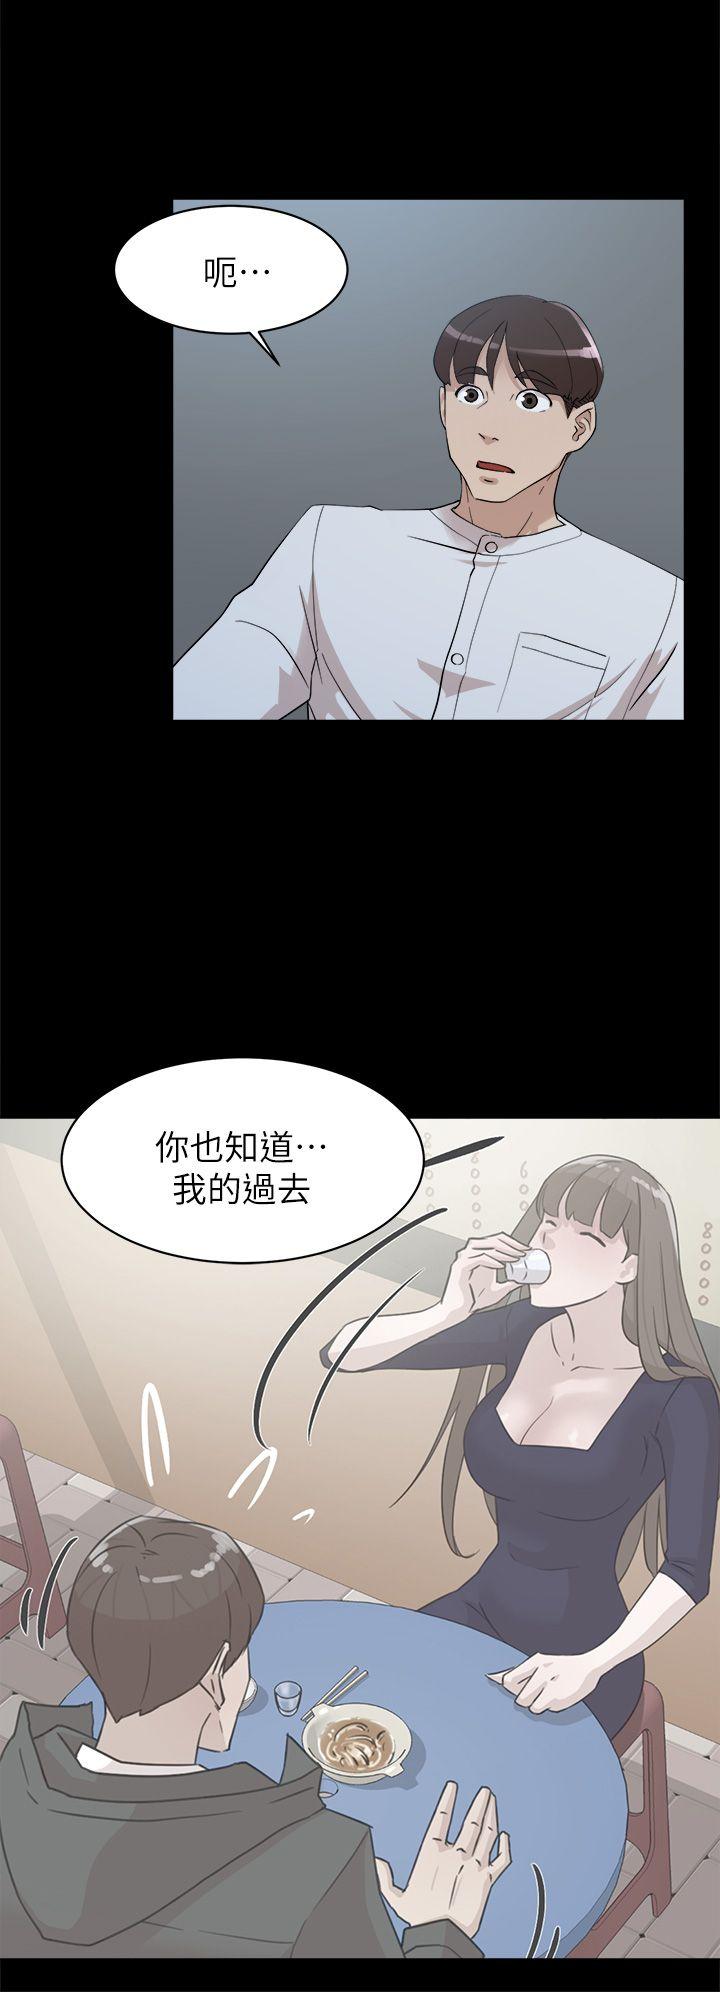 韩国污漫画 她的高跟鞋(無刪減) 第66话-你能负责吗? 26